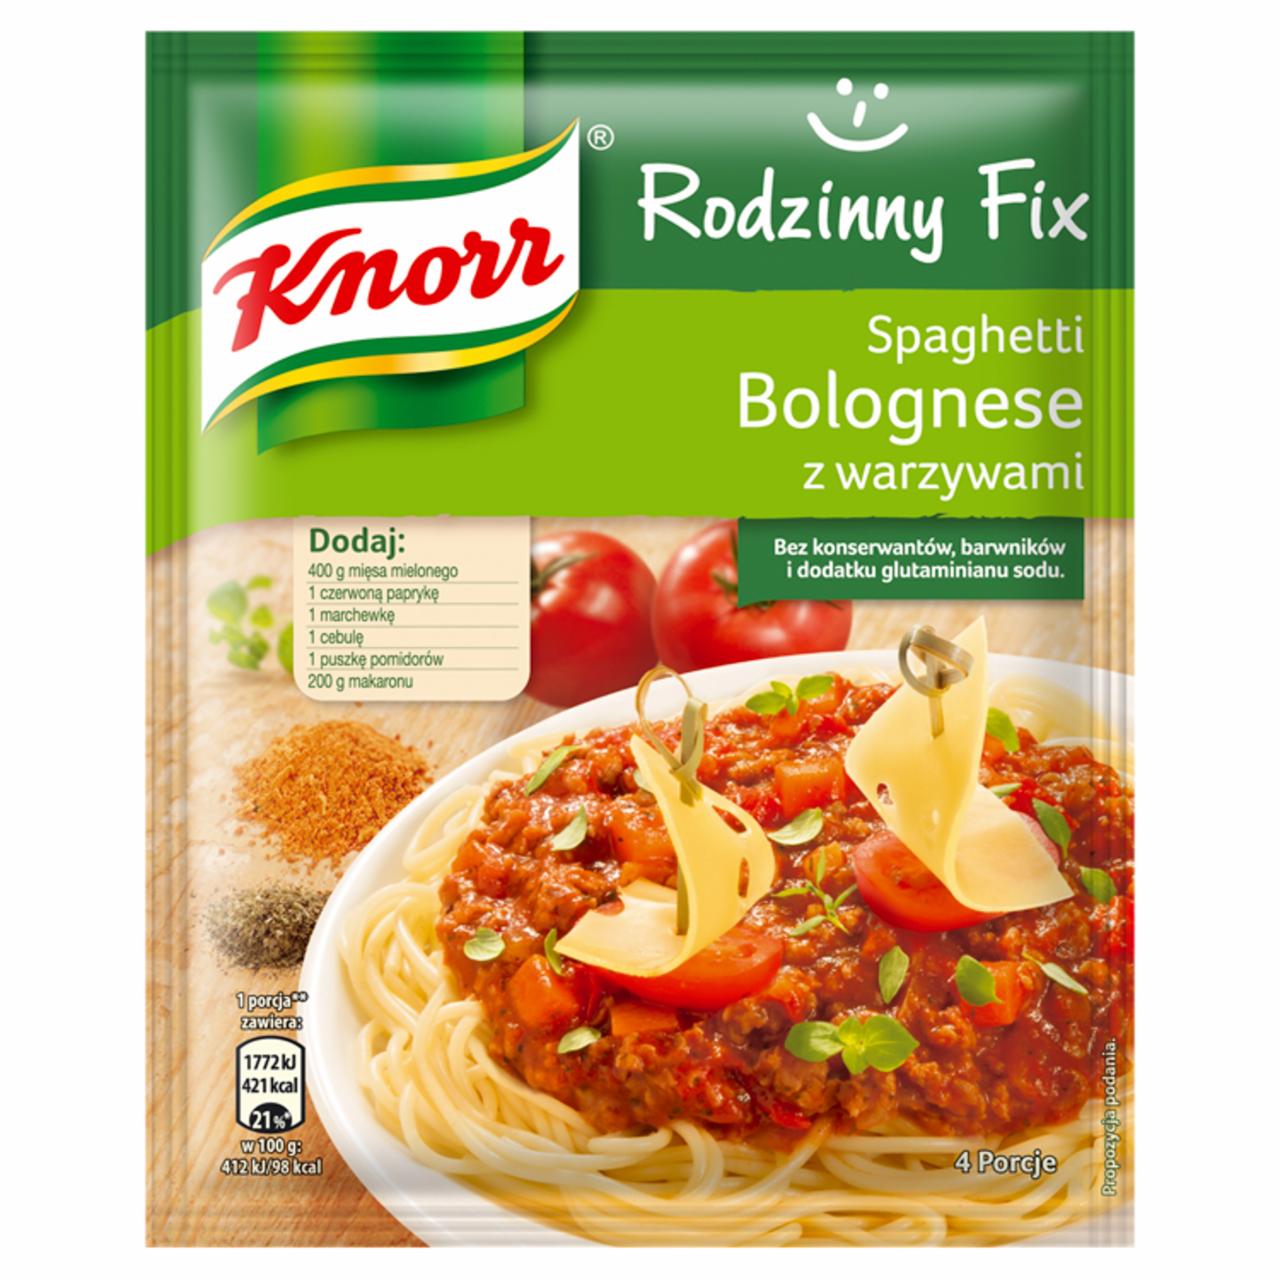 Zdjęcia - Knorr Rodzinny Fix Spaghetti Bolognese z warzywami 48 g